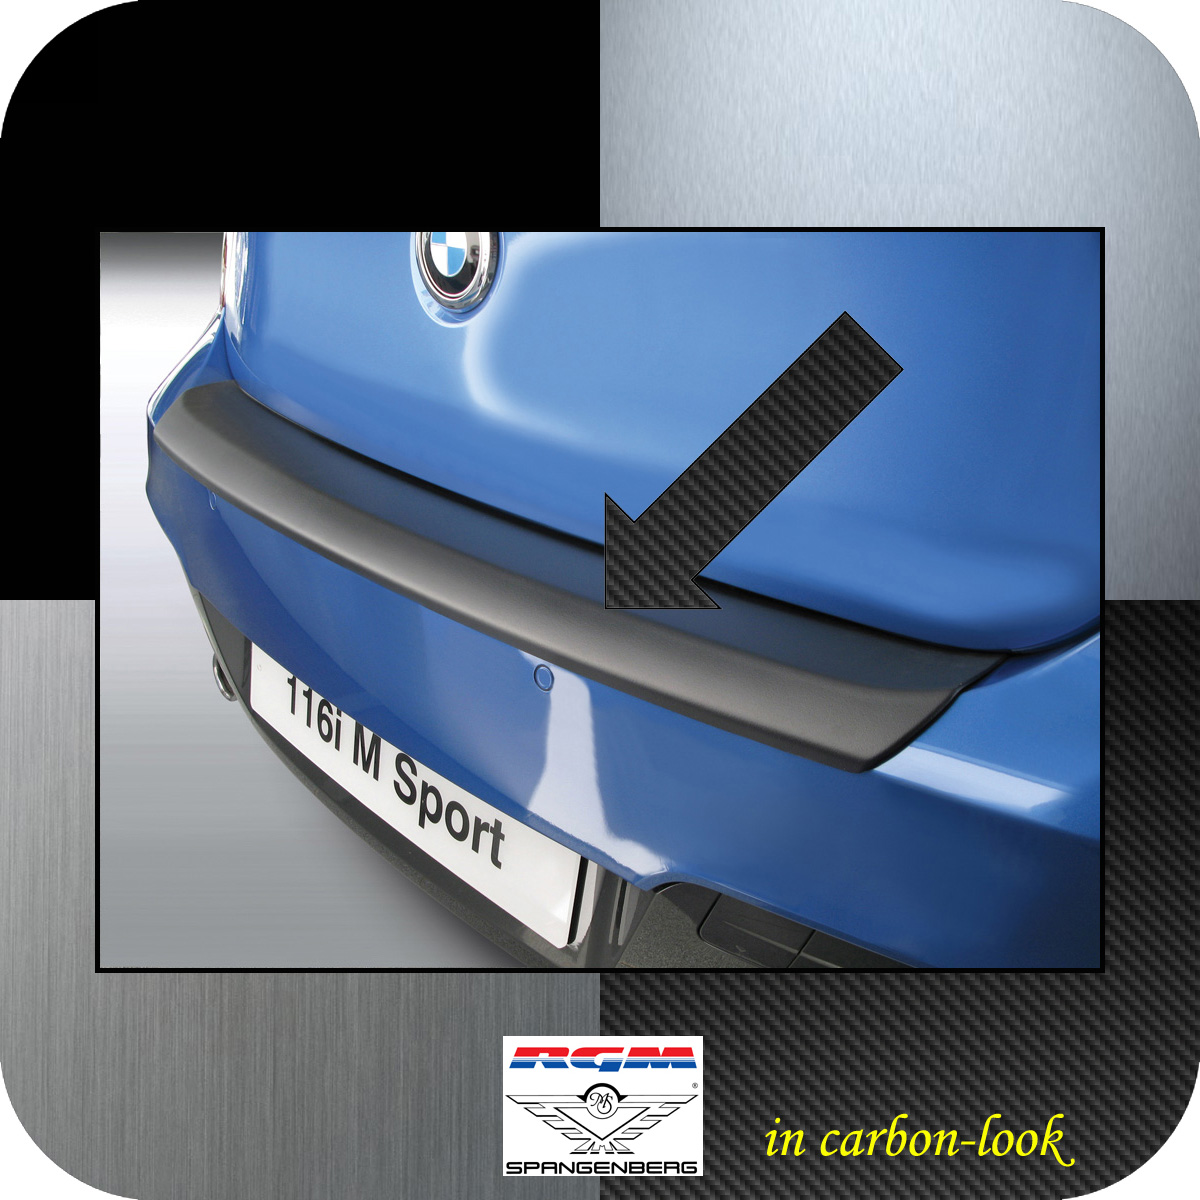 Ladekantenschutz Carbon-Look BMW 1er F21 F20 M-Style vor Mopf 2011-2015 3509618